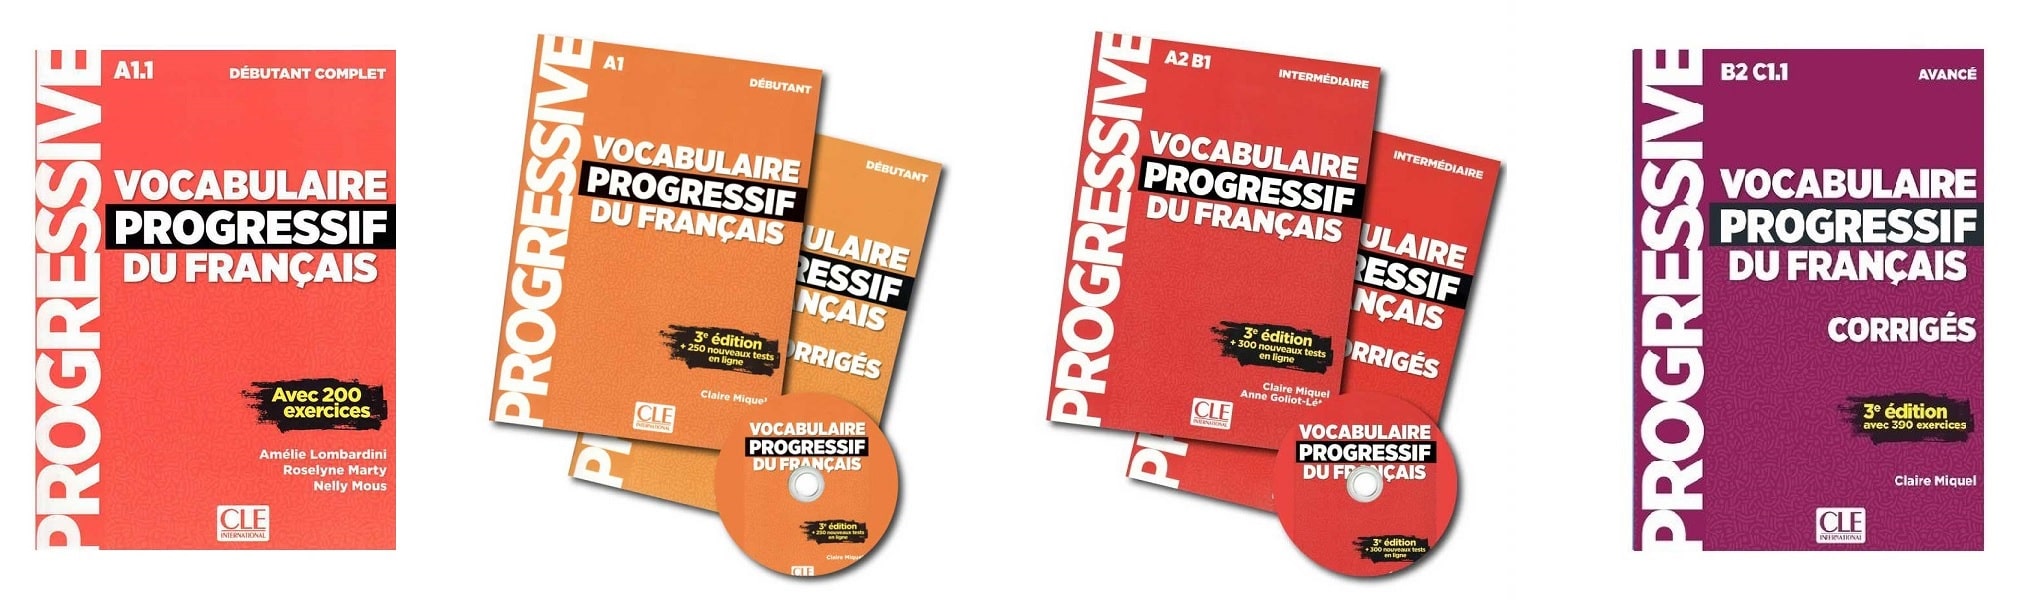 خرید کتاب زبان | فروشگاه اینترنتی کتاب زبان | Vocabulaire Progressif Du Francais | وکبیولر پروگرسیو فرانسه